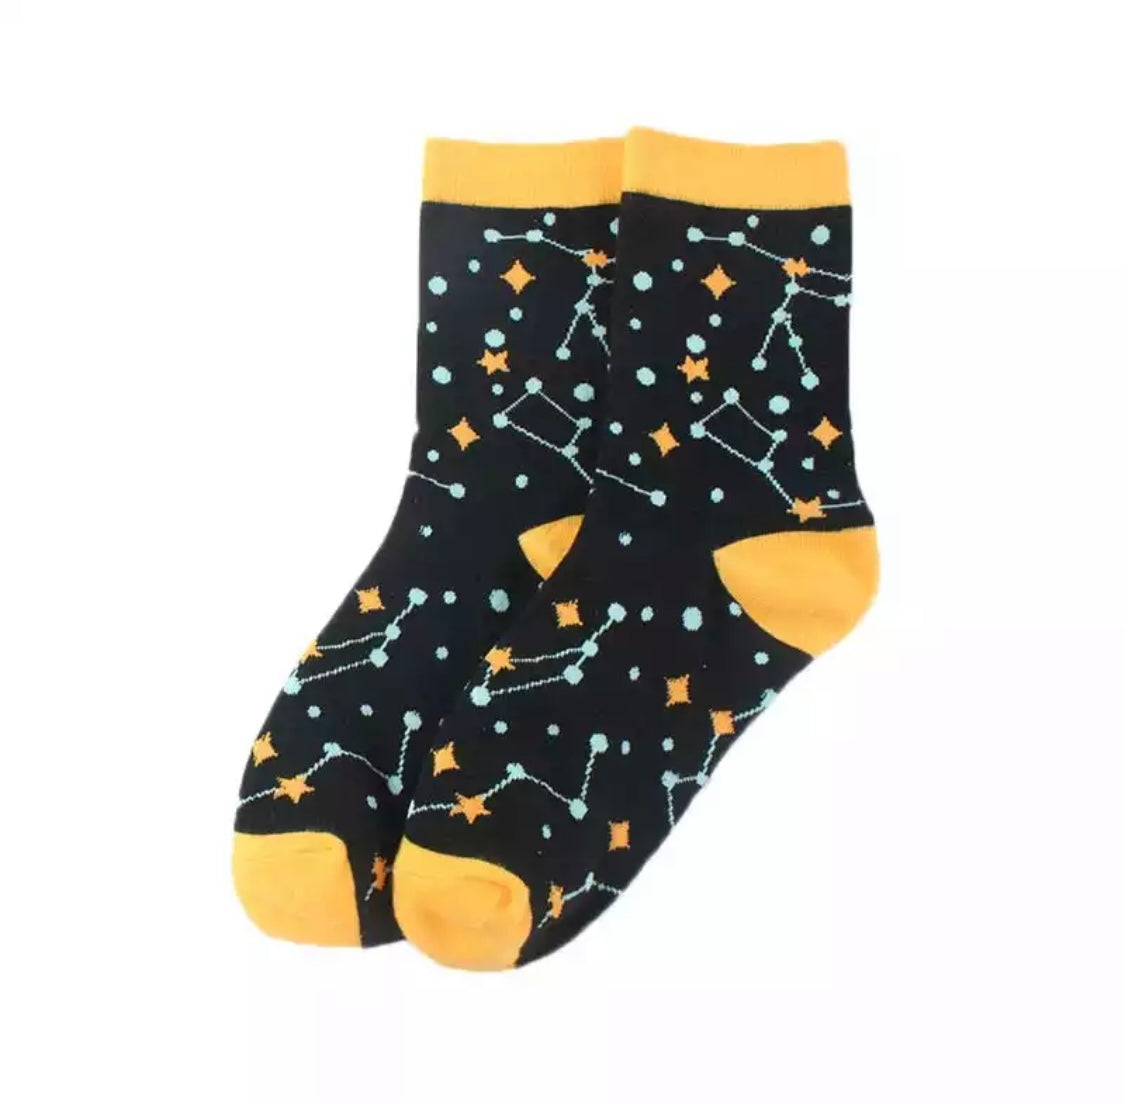 Constellation Socks